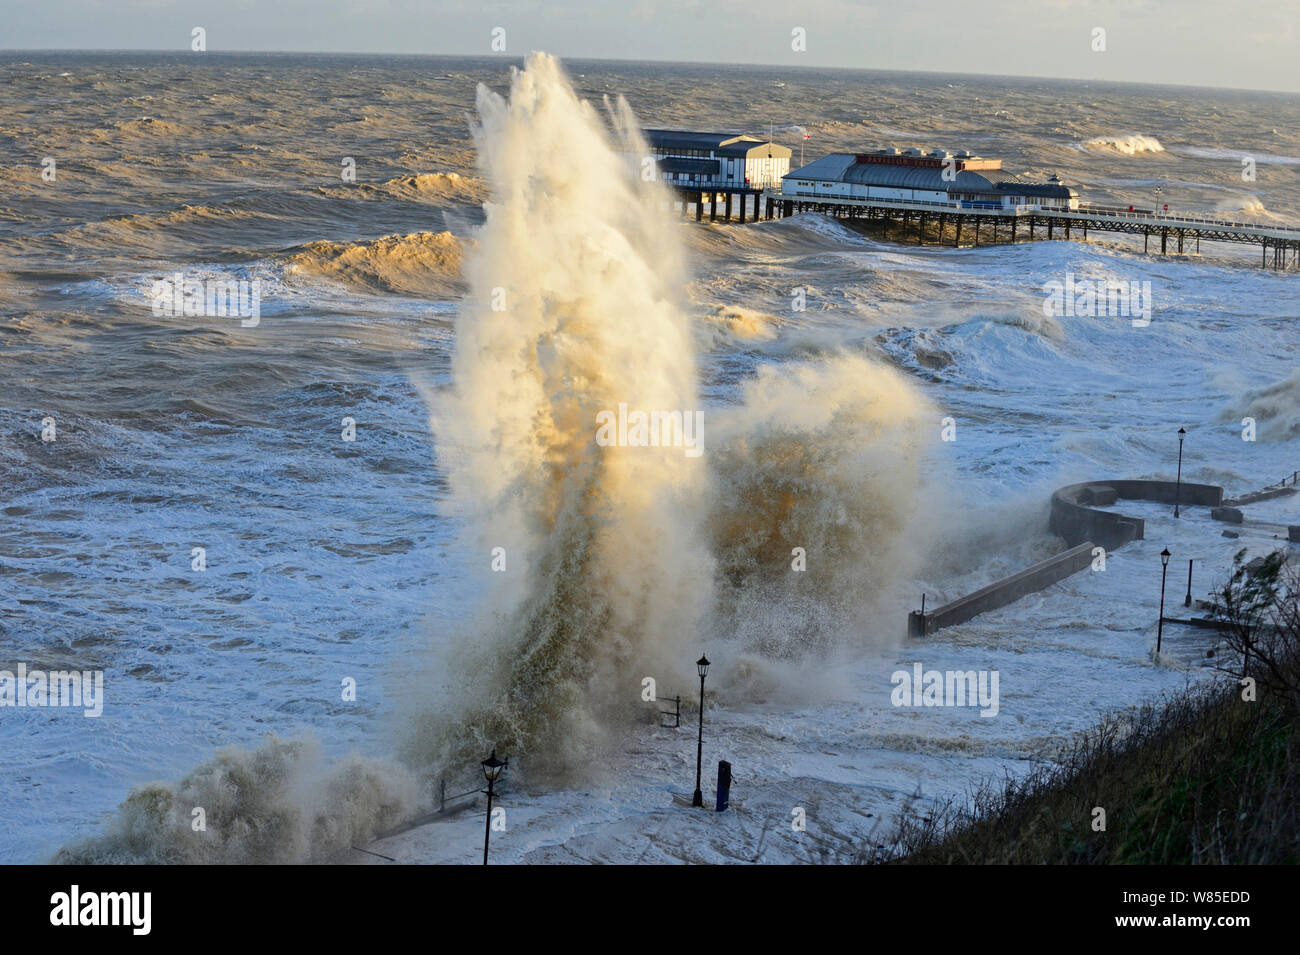 Hohe Wellen peitschen Cromer Strandpromenade und Seebrücke während der Sturmflut., Norfolk, England, UK. Dezember 2013. Stockfoto